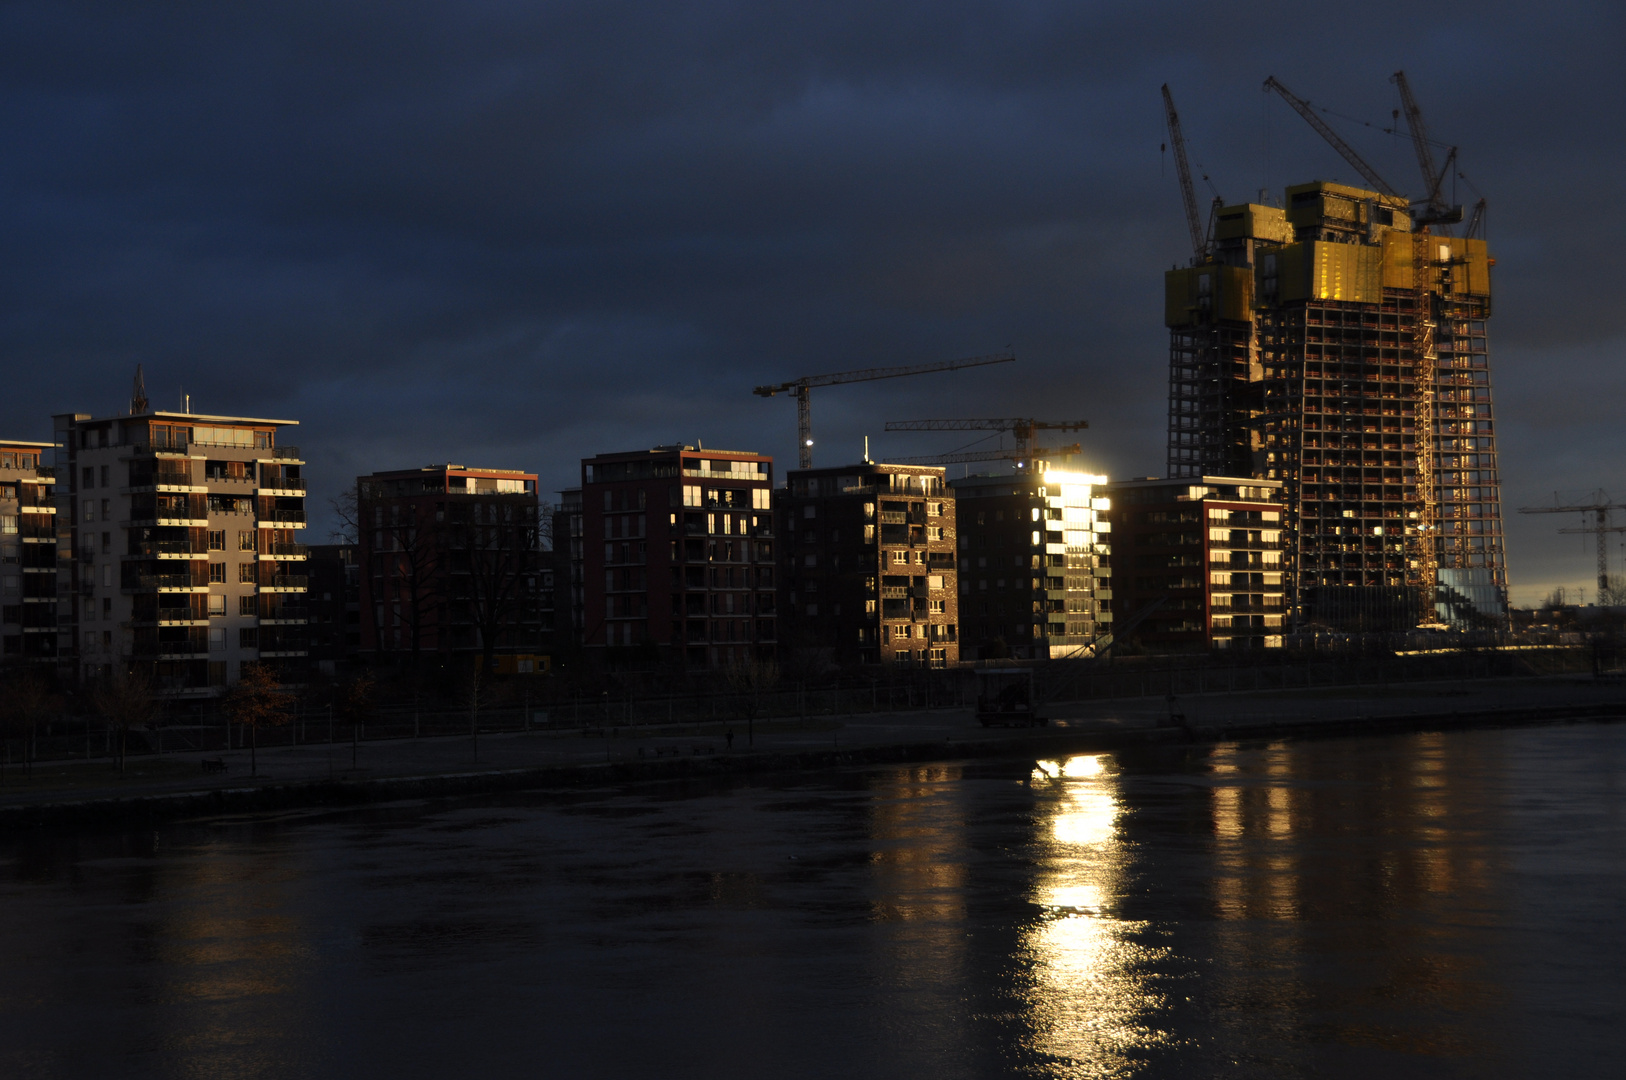 EZB-Neubau in Frankfurt im Licht der aufgehenden Sonne